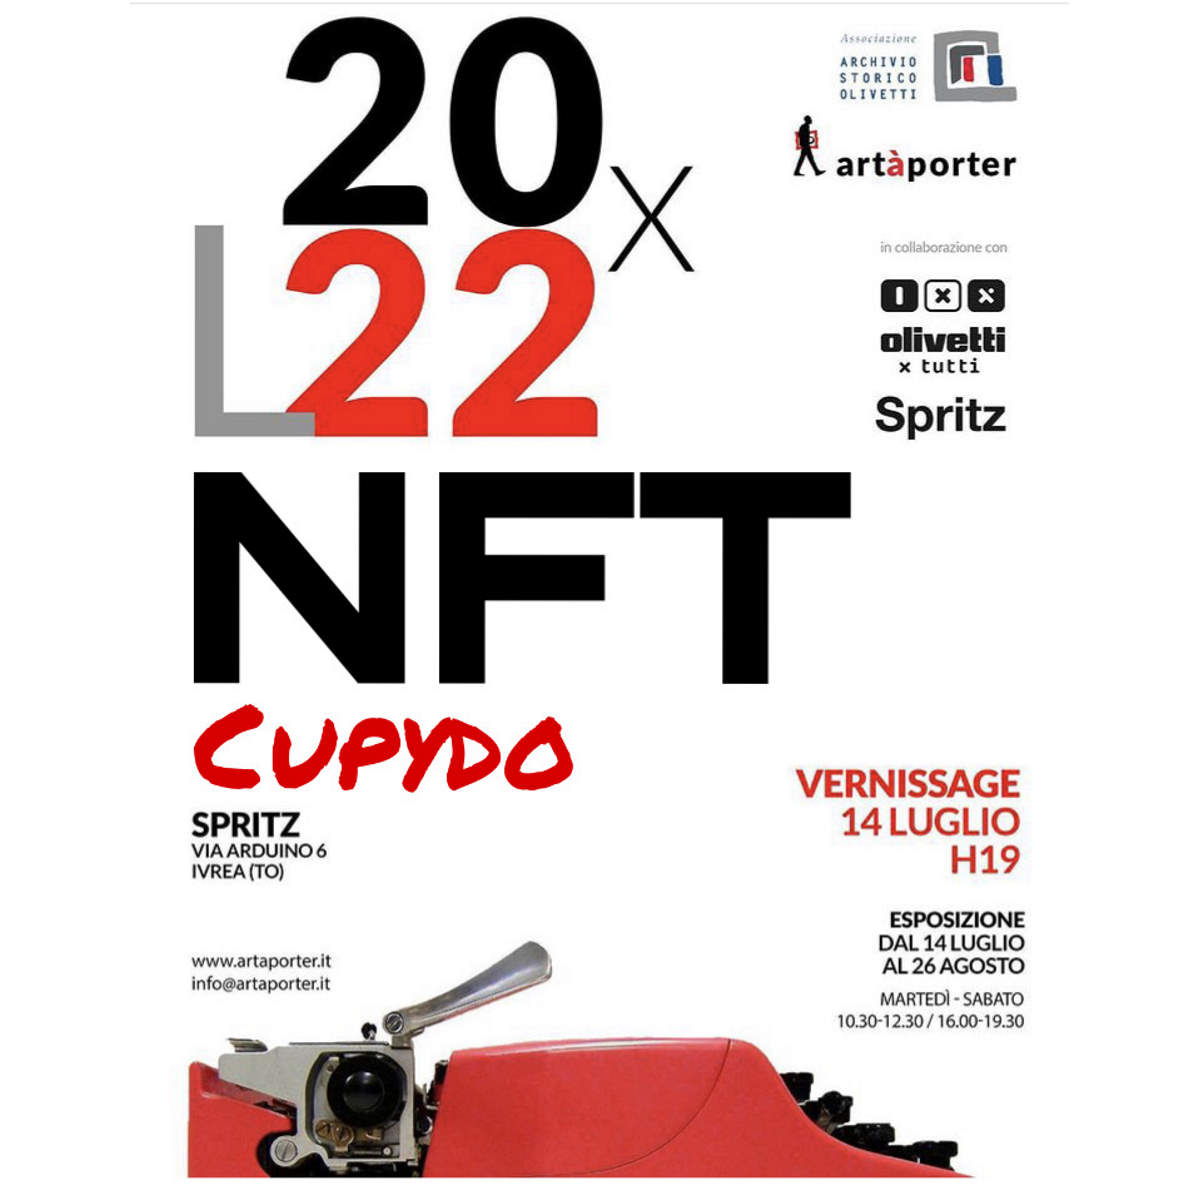 Olivetti strizza l’occhio alla crypto arte, l’NFT di Cupydo fa già notizia